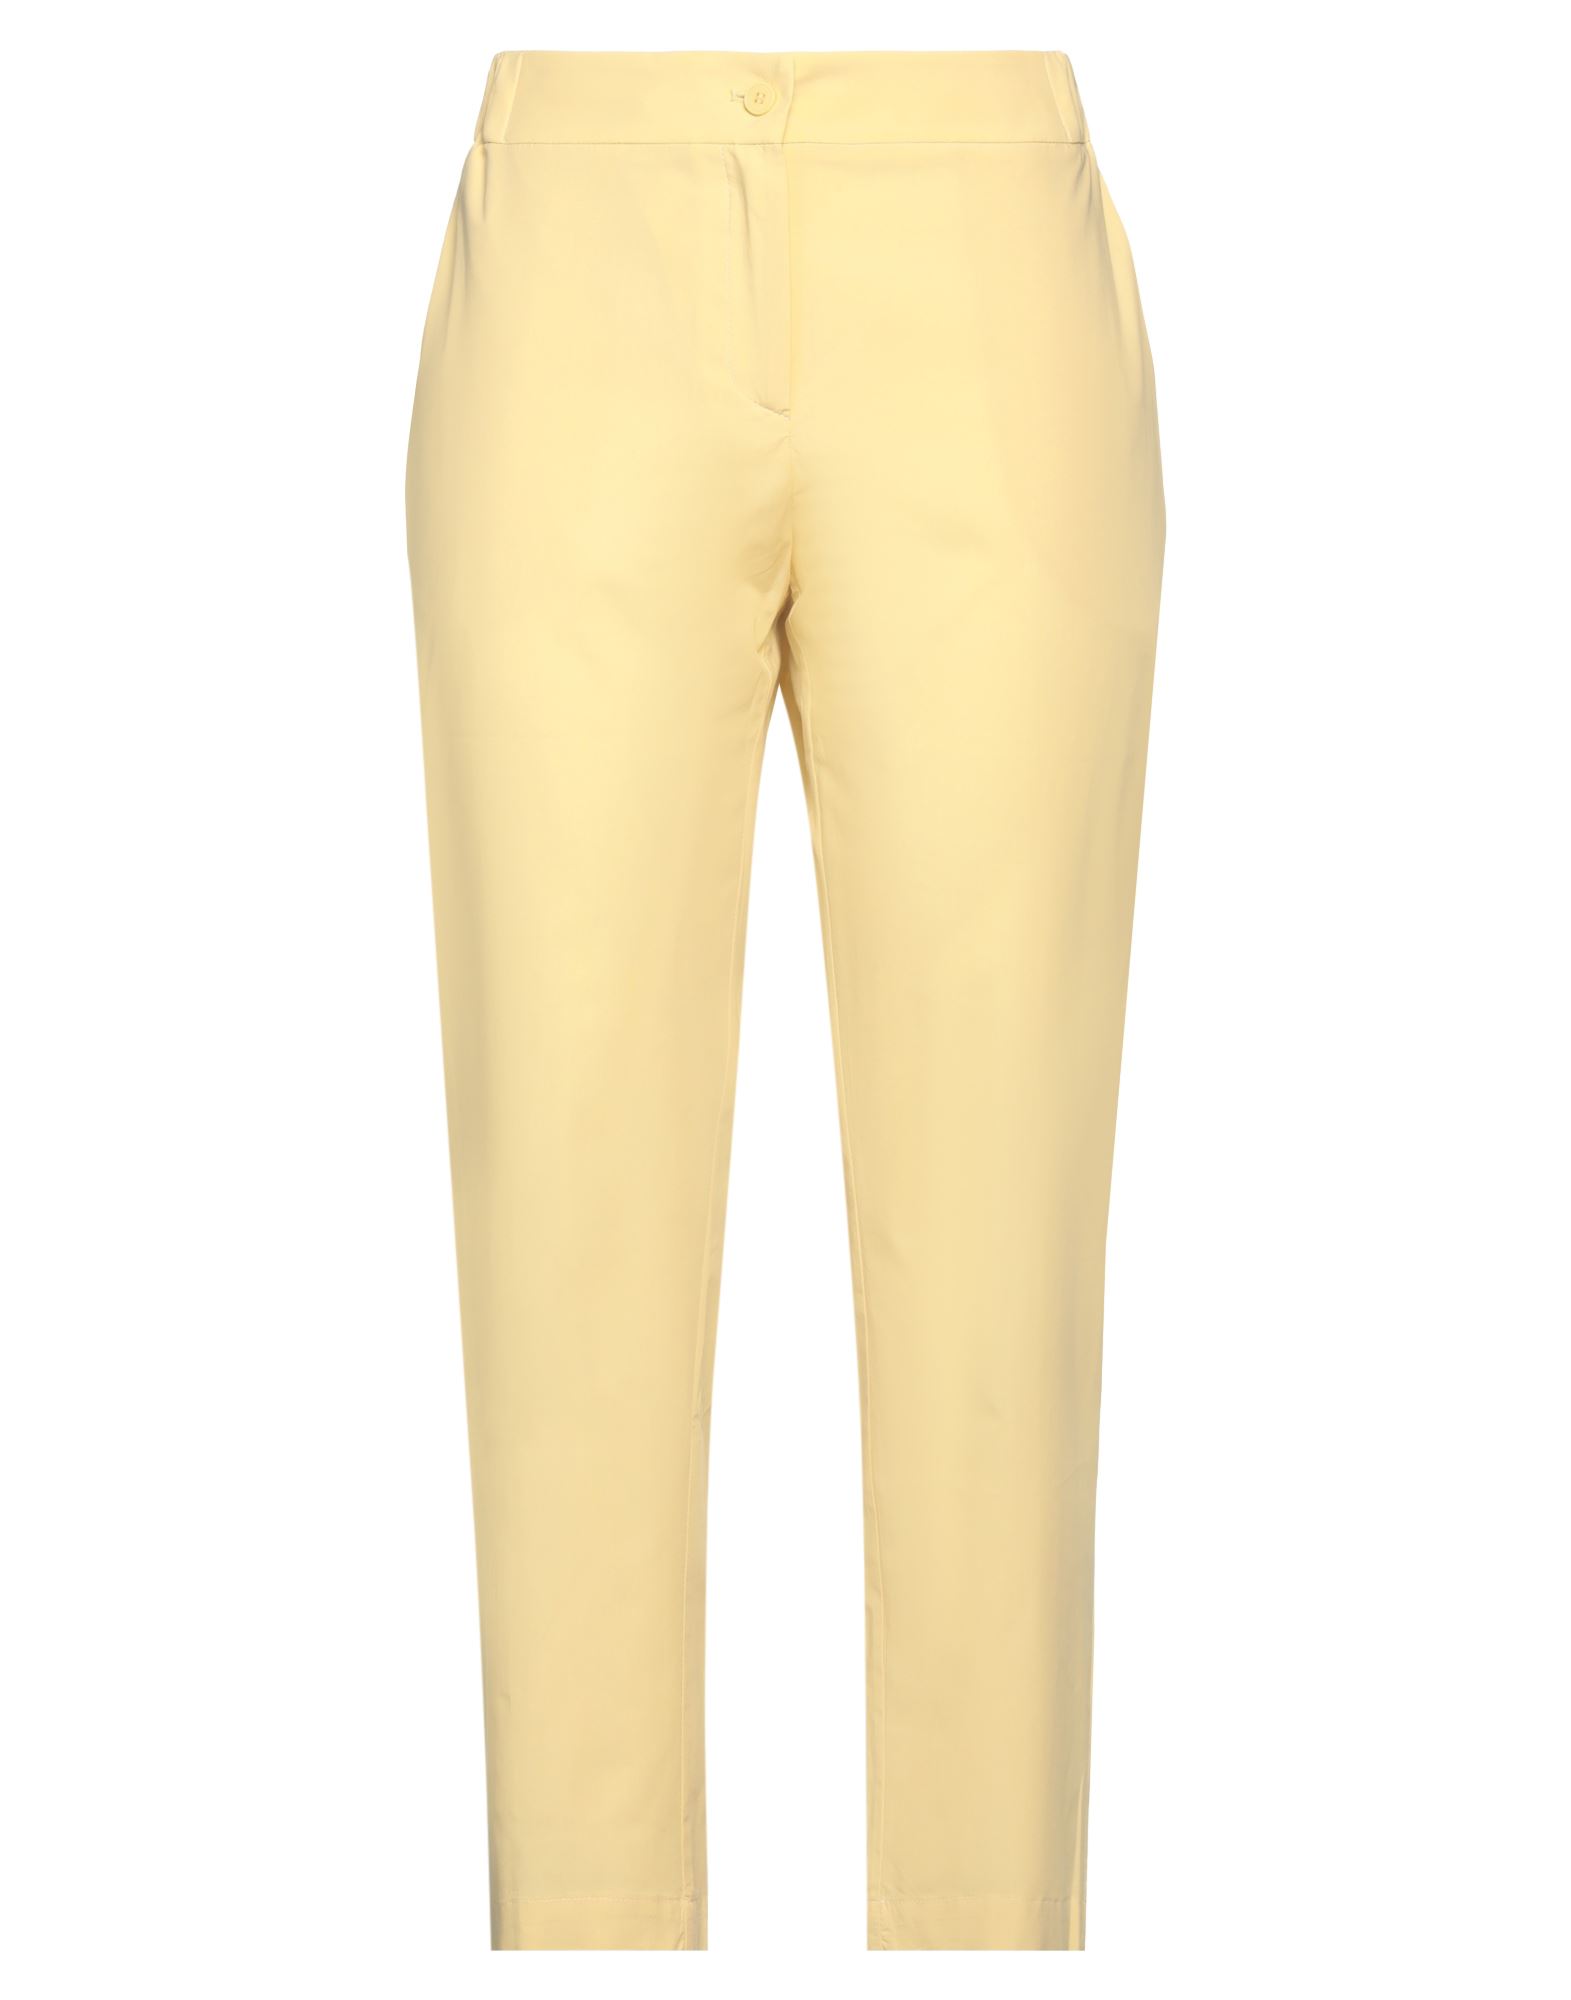 Ottod'ame Woman Pants Yellow Size 8 Cotton